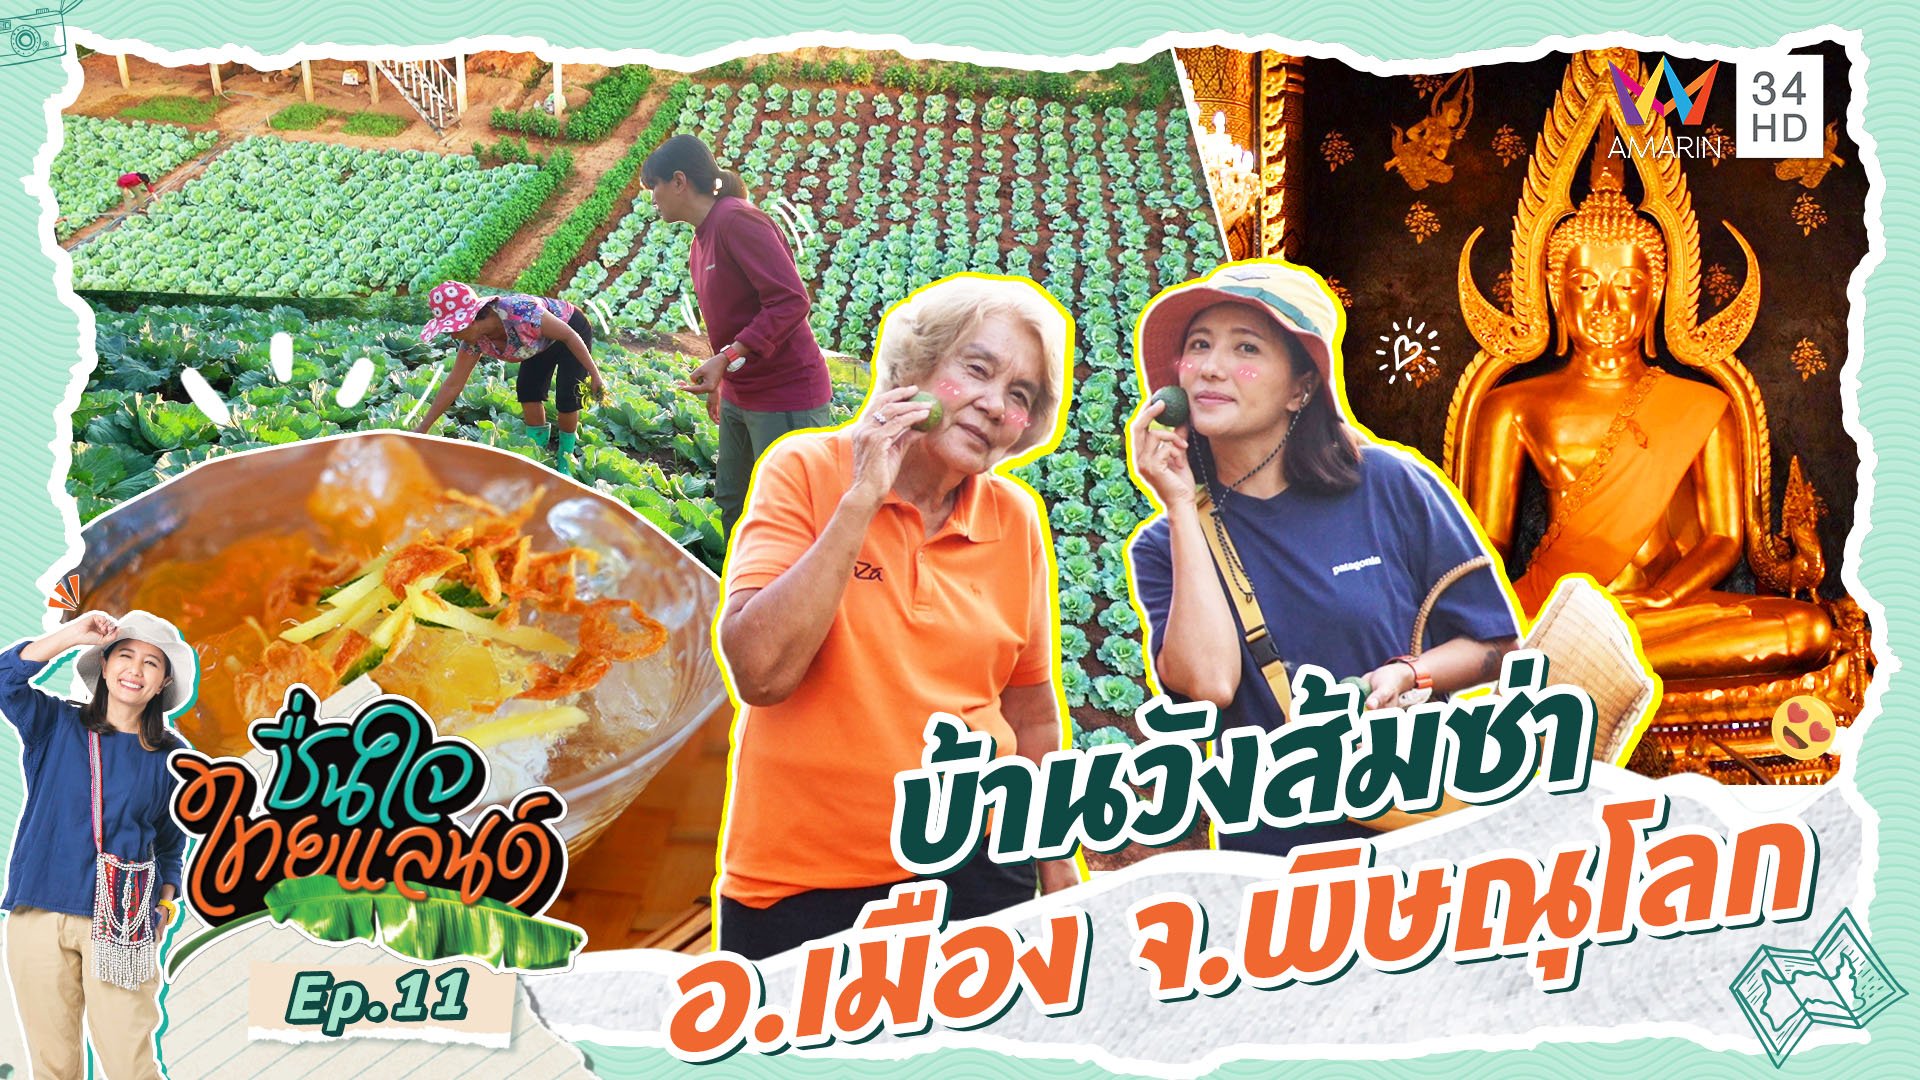 ชื่นใจไทยแลนด์ | EP.11 บ้านวังส้มซ่า อ.เมือง จ.พิษณุโลก | 13 ม.ค. 67 | AMARIN TVHD34